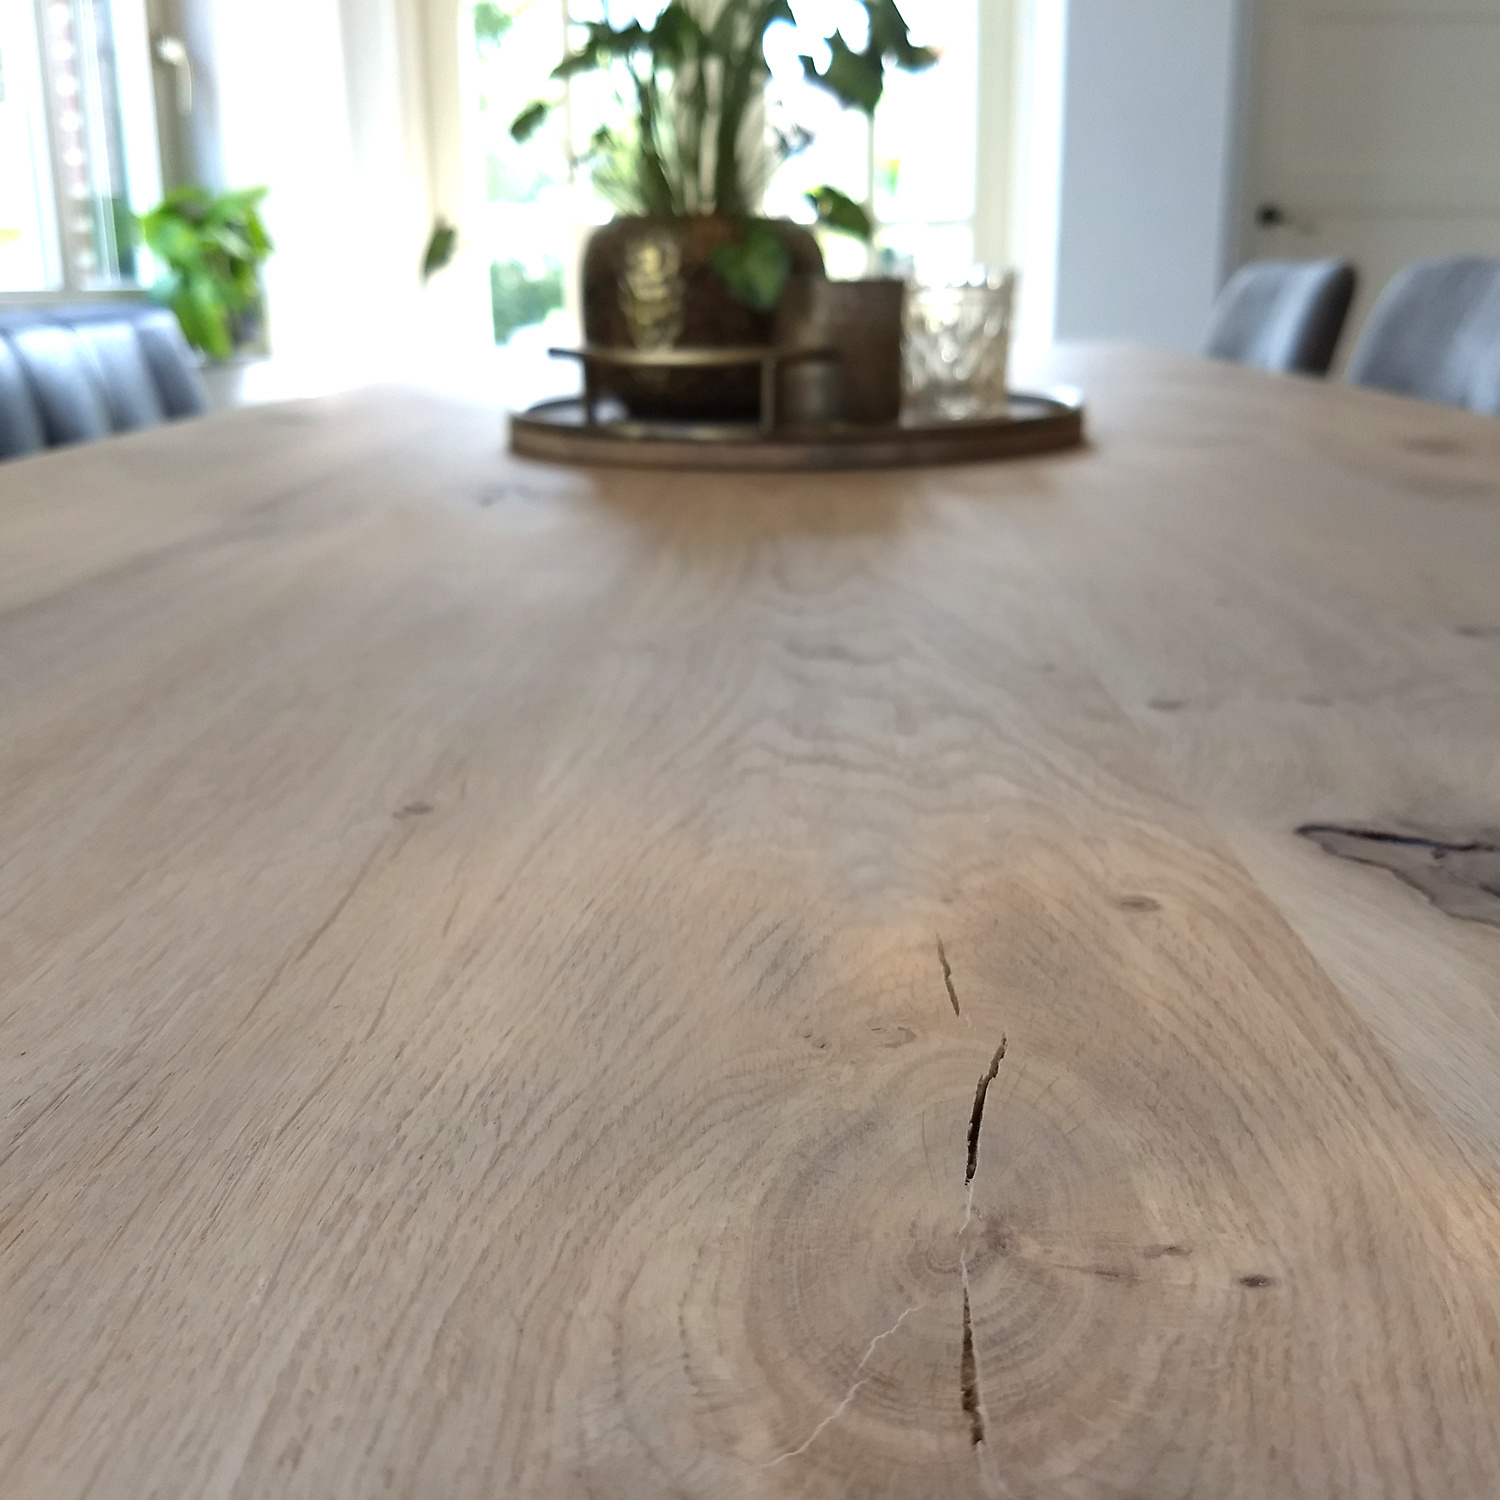  Eiken tafelblad - 2,5 cm dik (1-laag) - Diverse afmetingen - rustiek Europees eikenhout - met brede lamellen (circa 14-20 cm) - verlijmd kd 8-12%